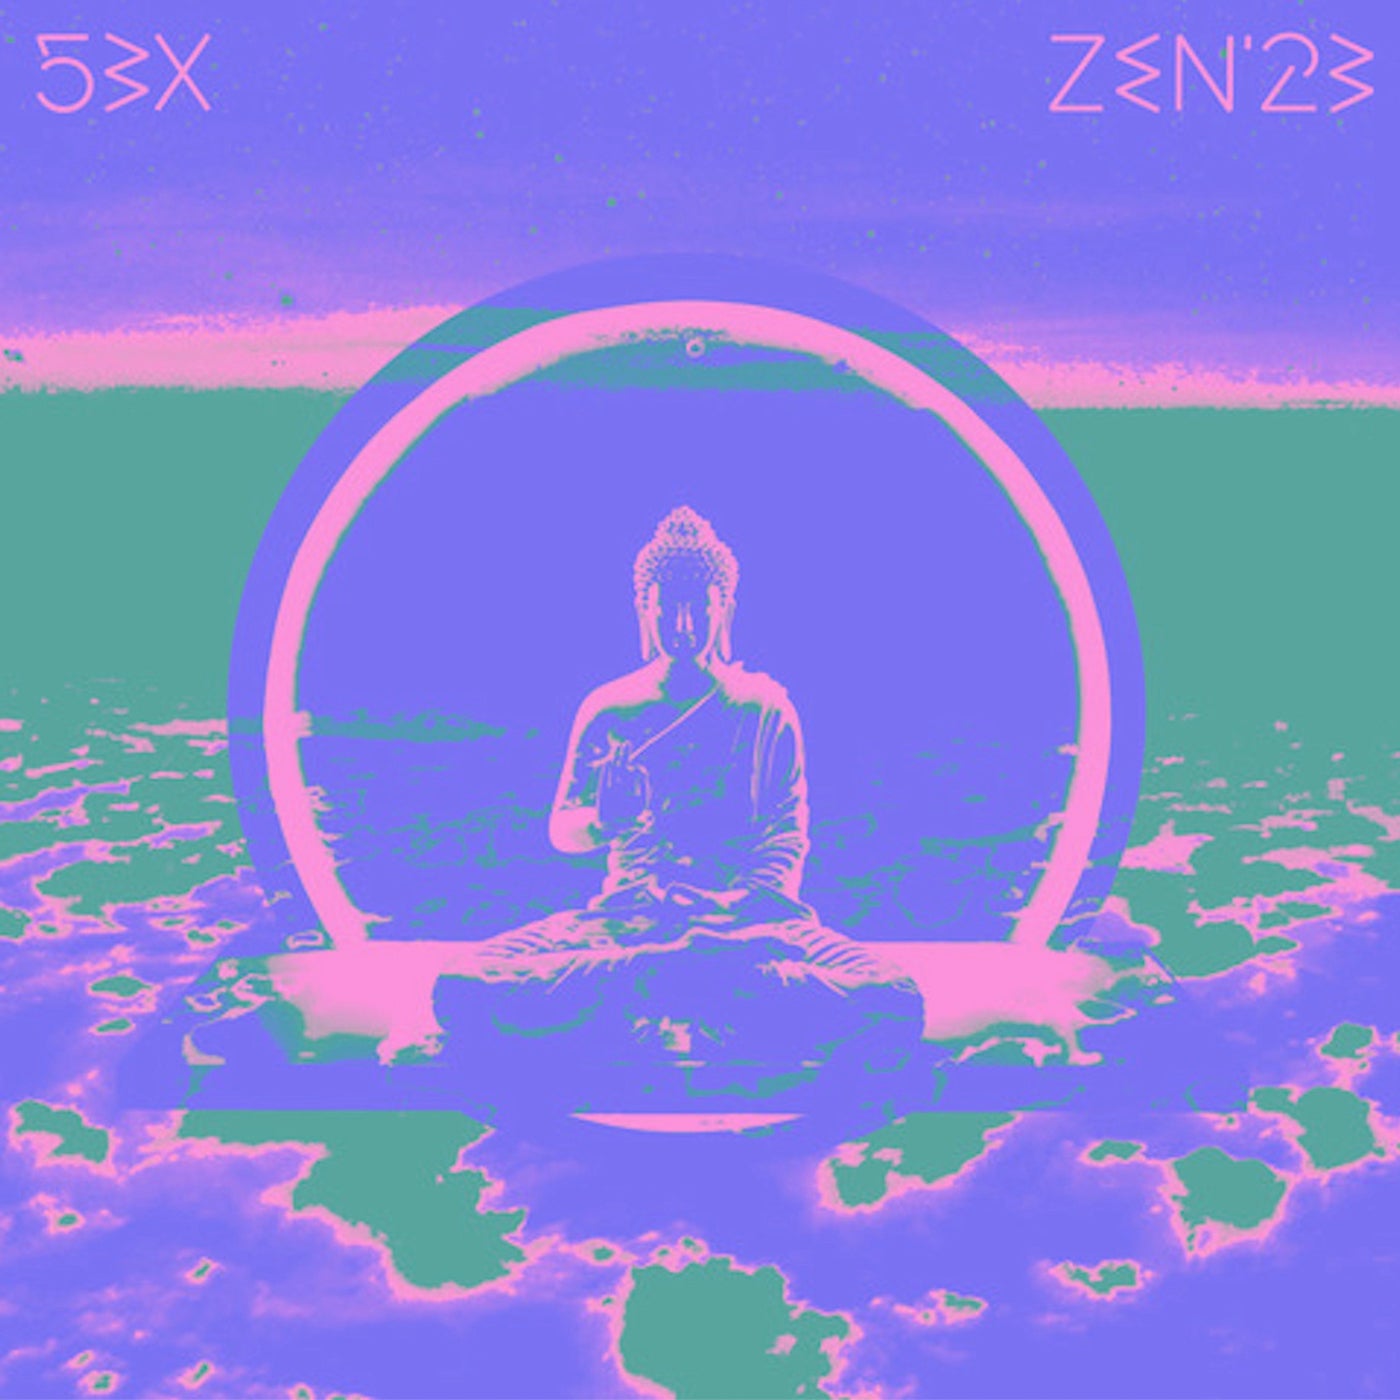 Zen '23